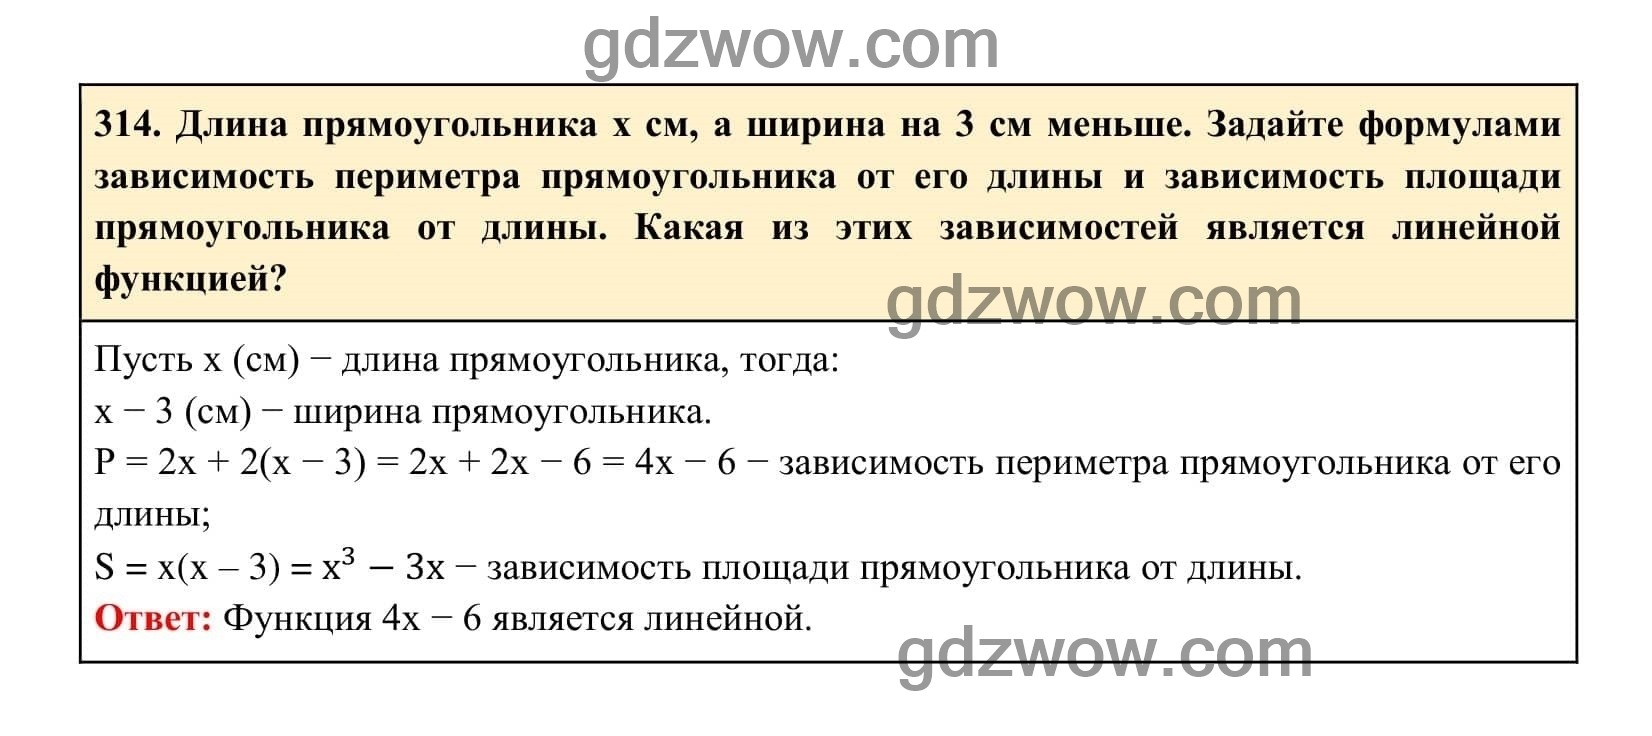 Упражнение 314 - ГДЗ по Алгебре 7 класс Учебник Макарычев (решебник) - GDZwow